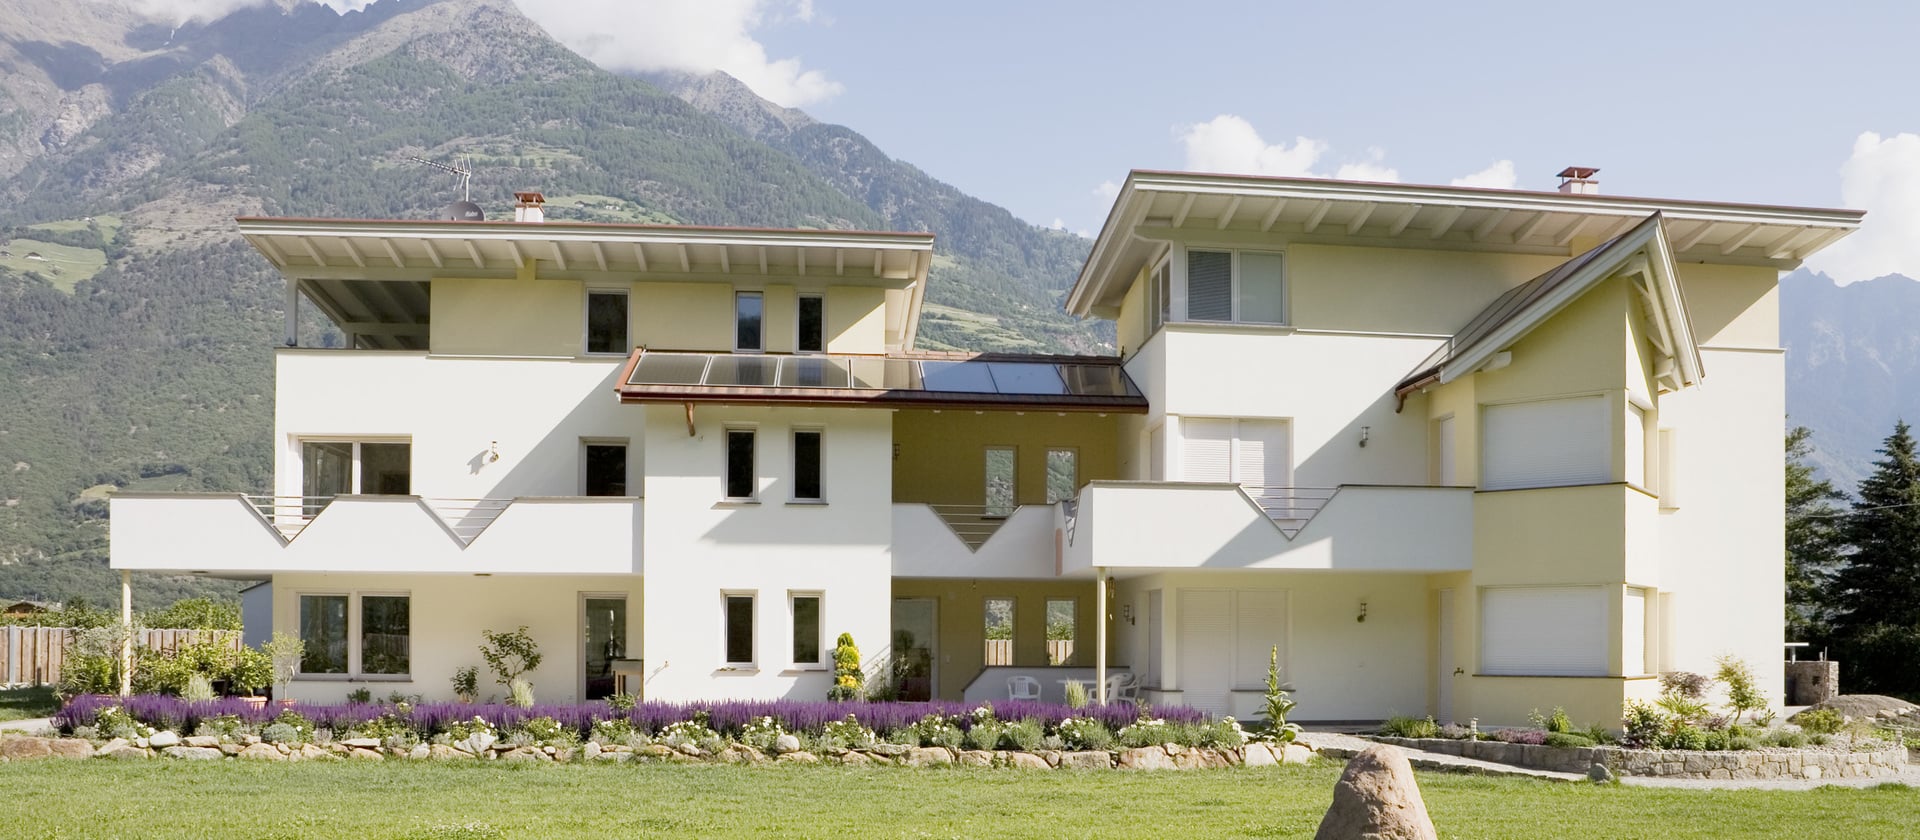 Maison dans le Tyrol du Sud